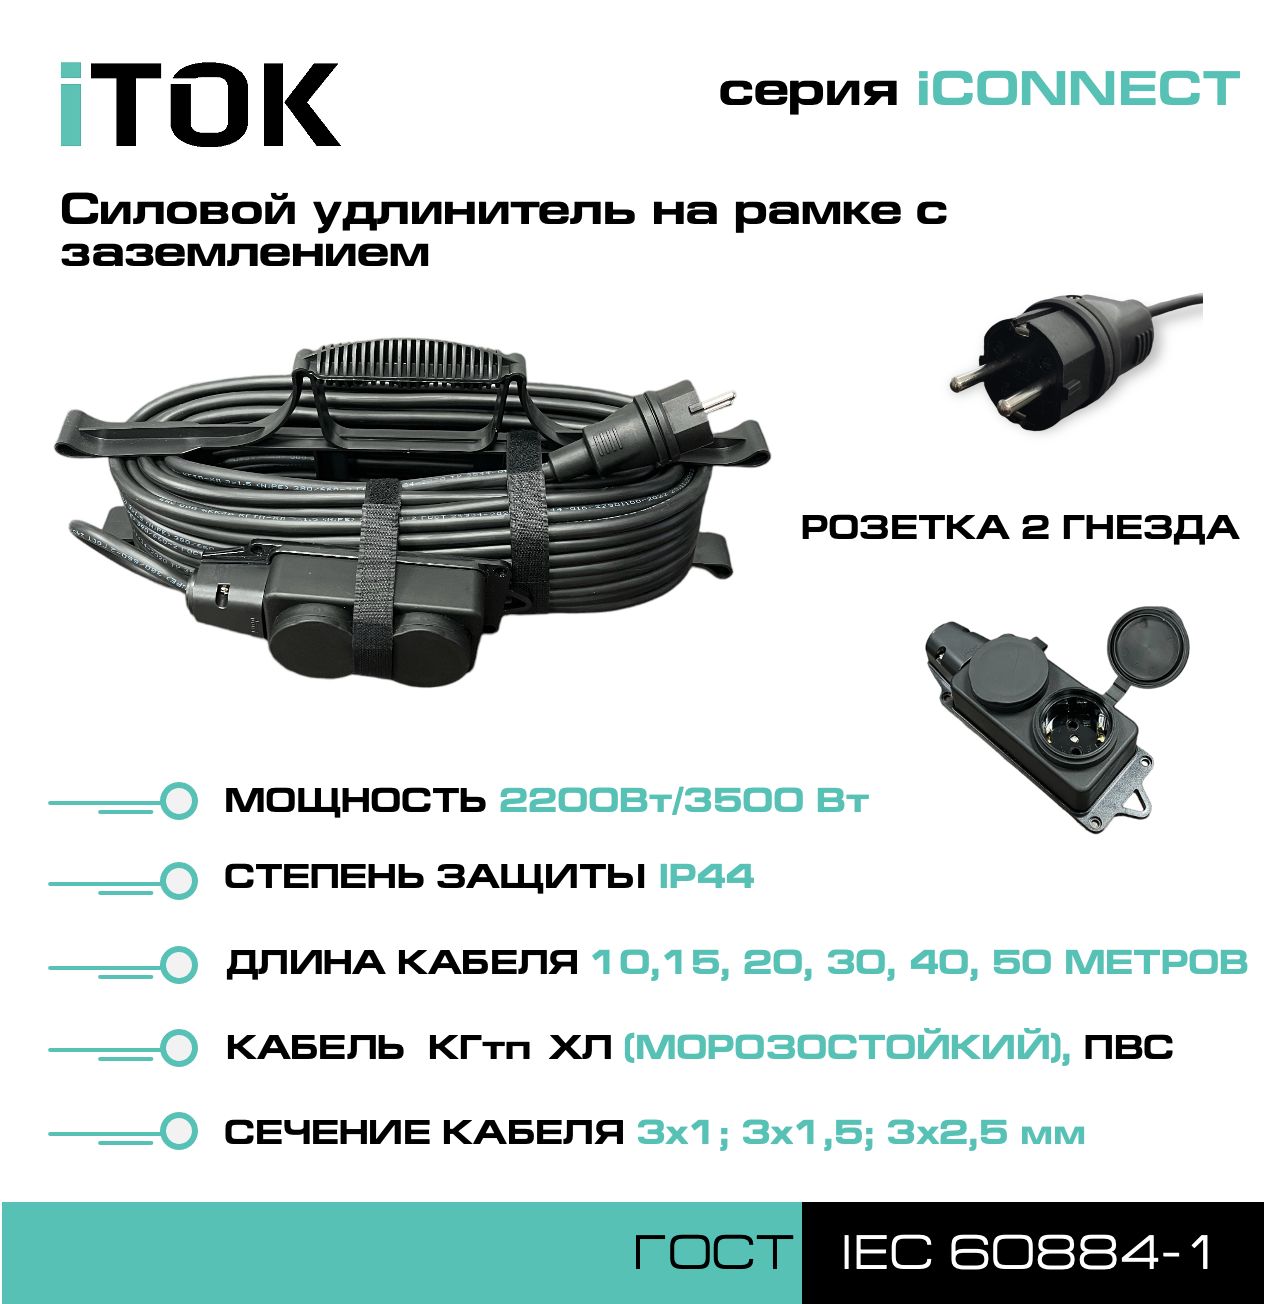 Удлинитель на рамке с заземлением серии iTOK iCONNECT КГтп-ХЛ 3х1,5 мм 2 гнезда IP44 15 м